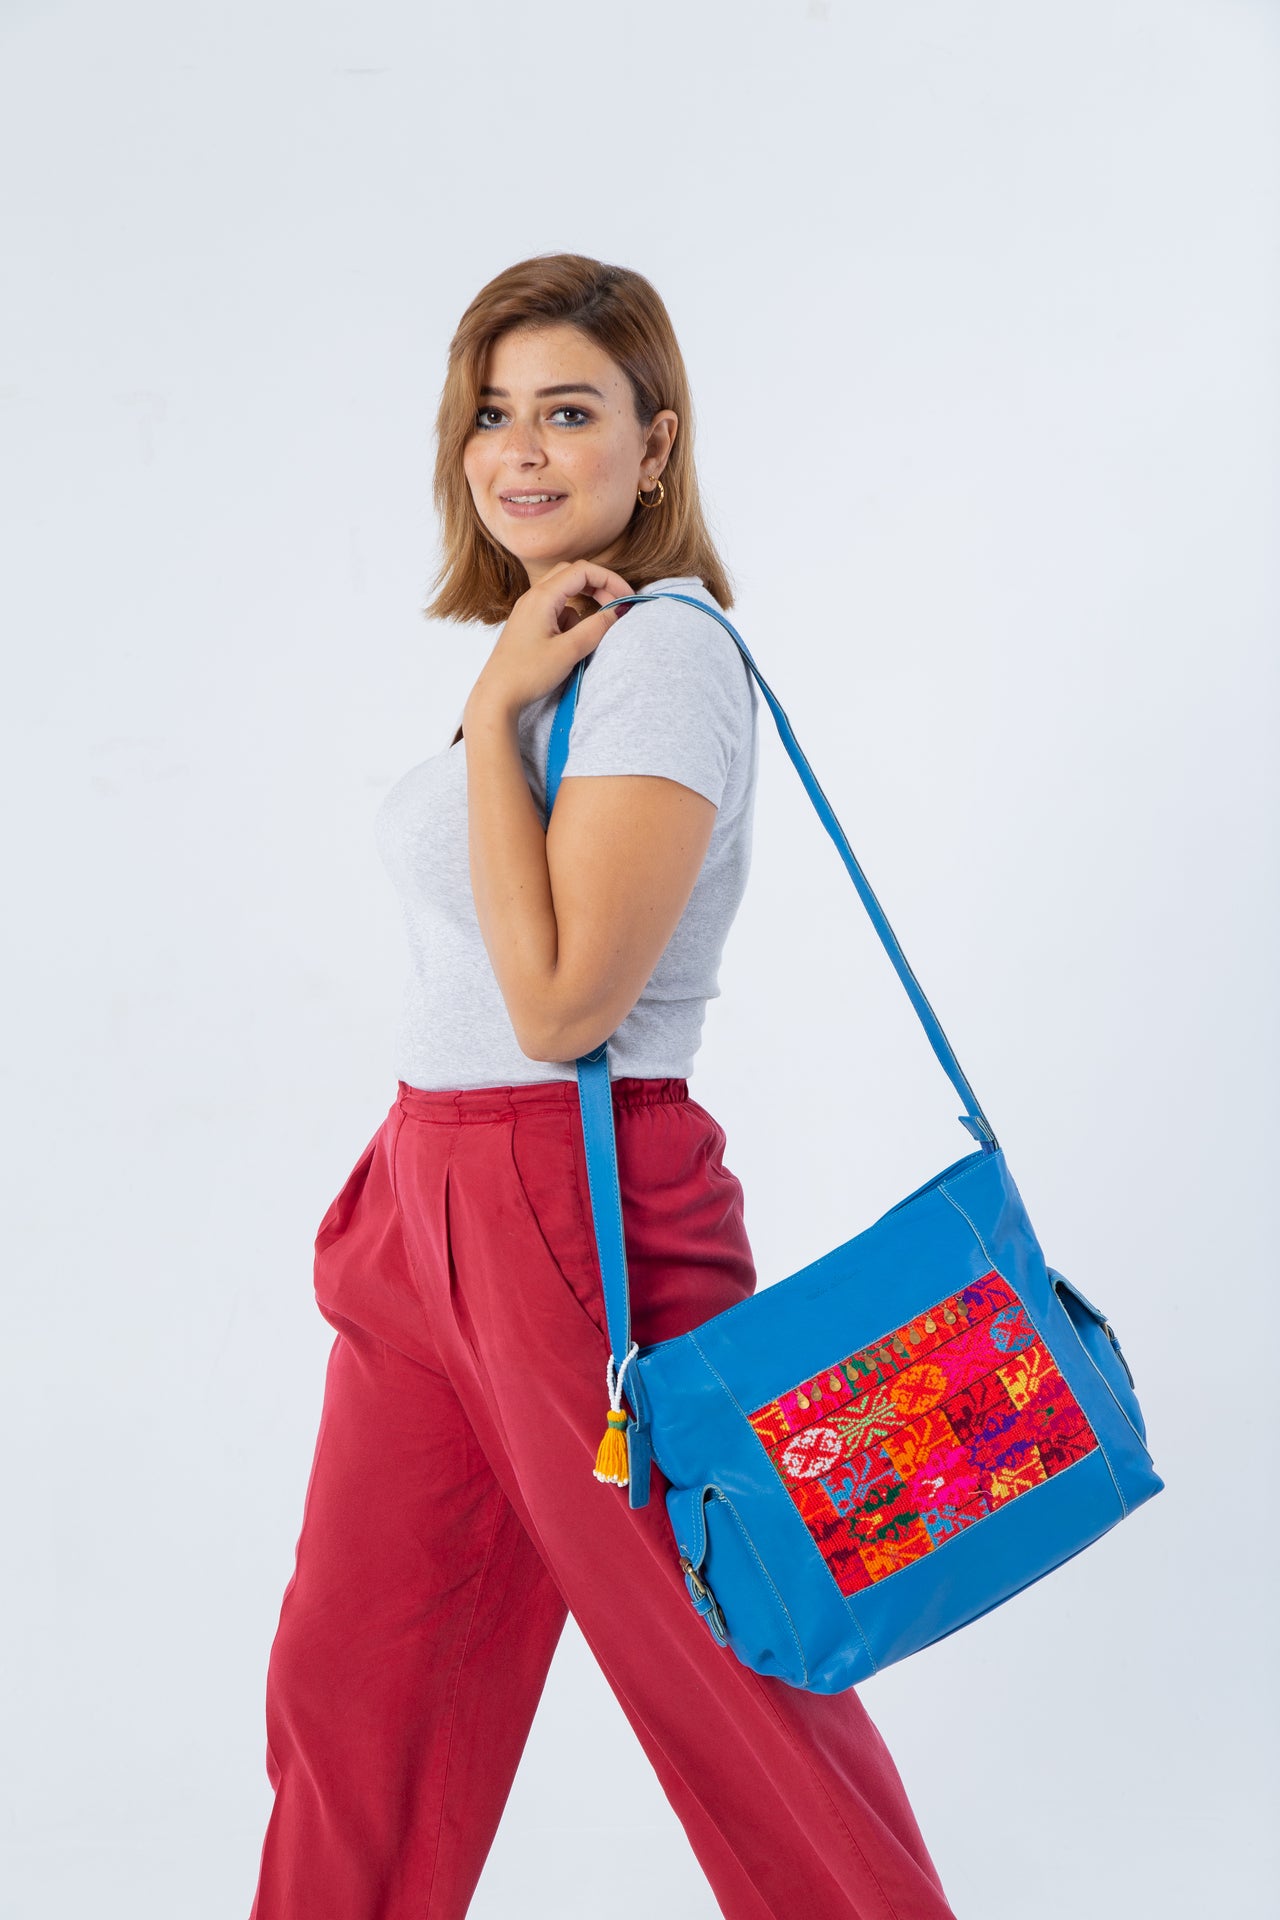 Sinai Rania Bag with Pockets